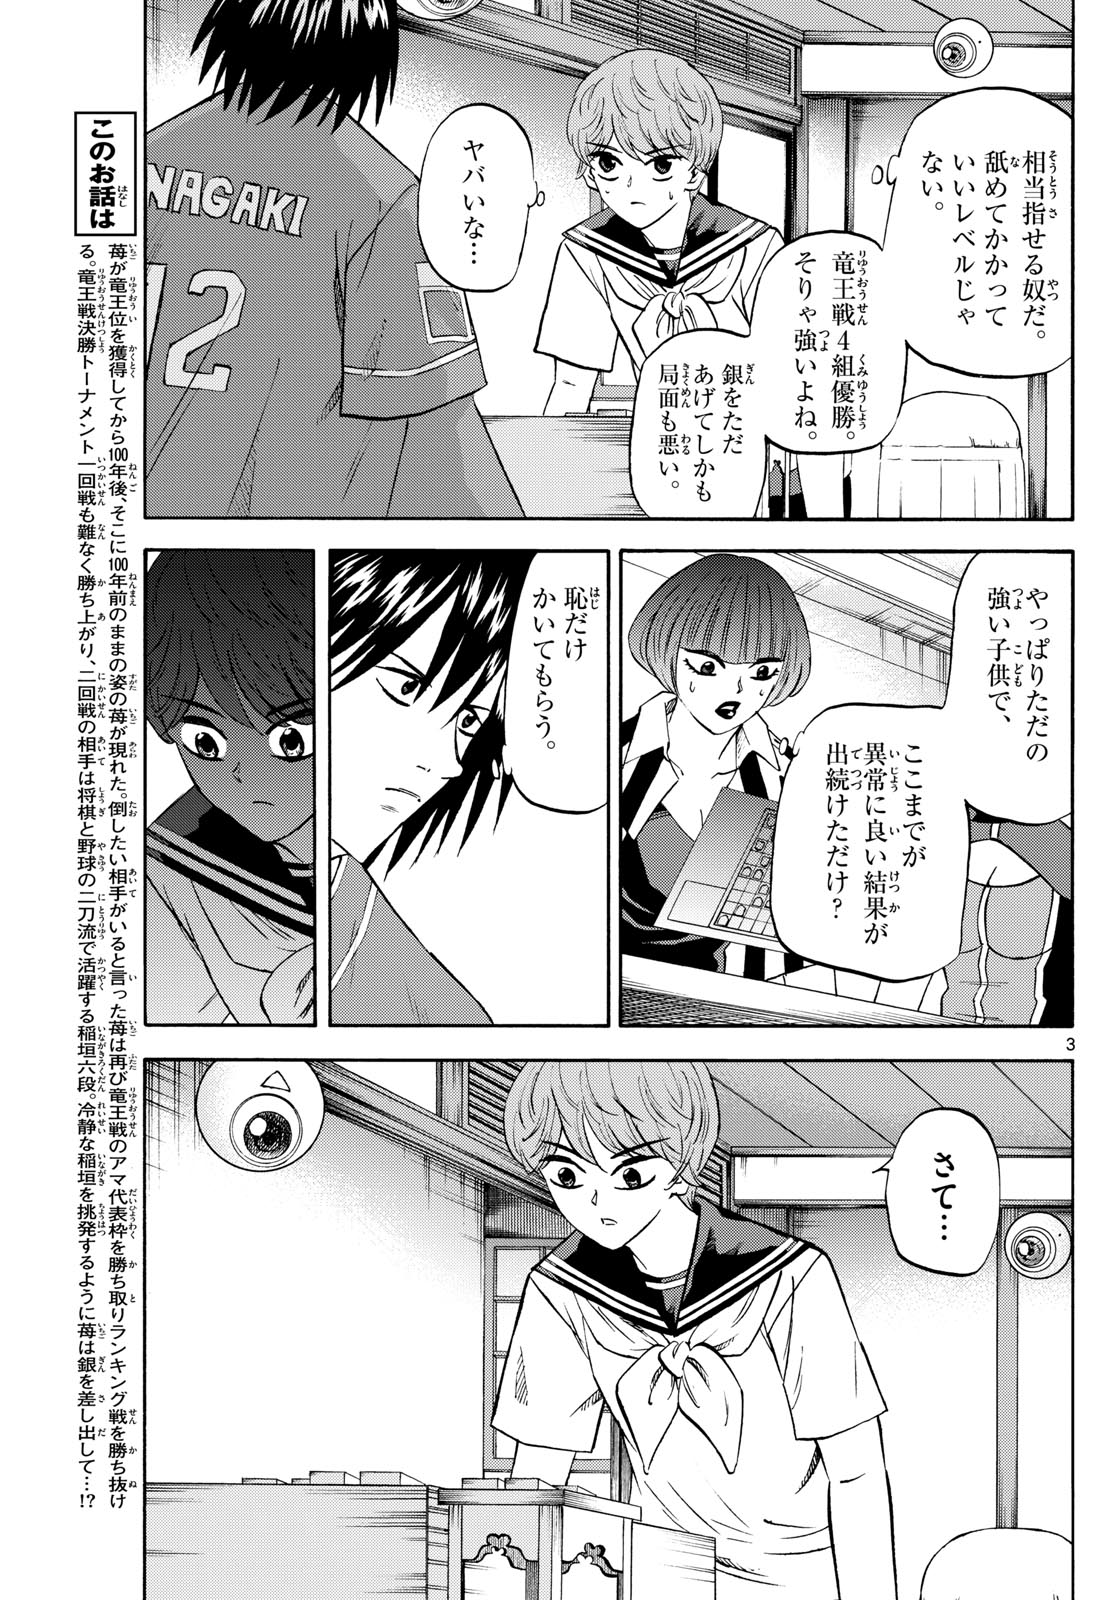 Tatsu to Ichigo - Chapter 198 - Page 3